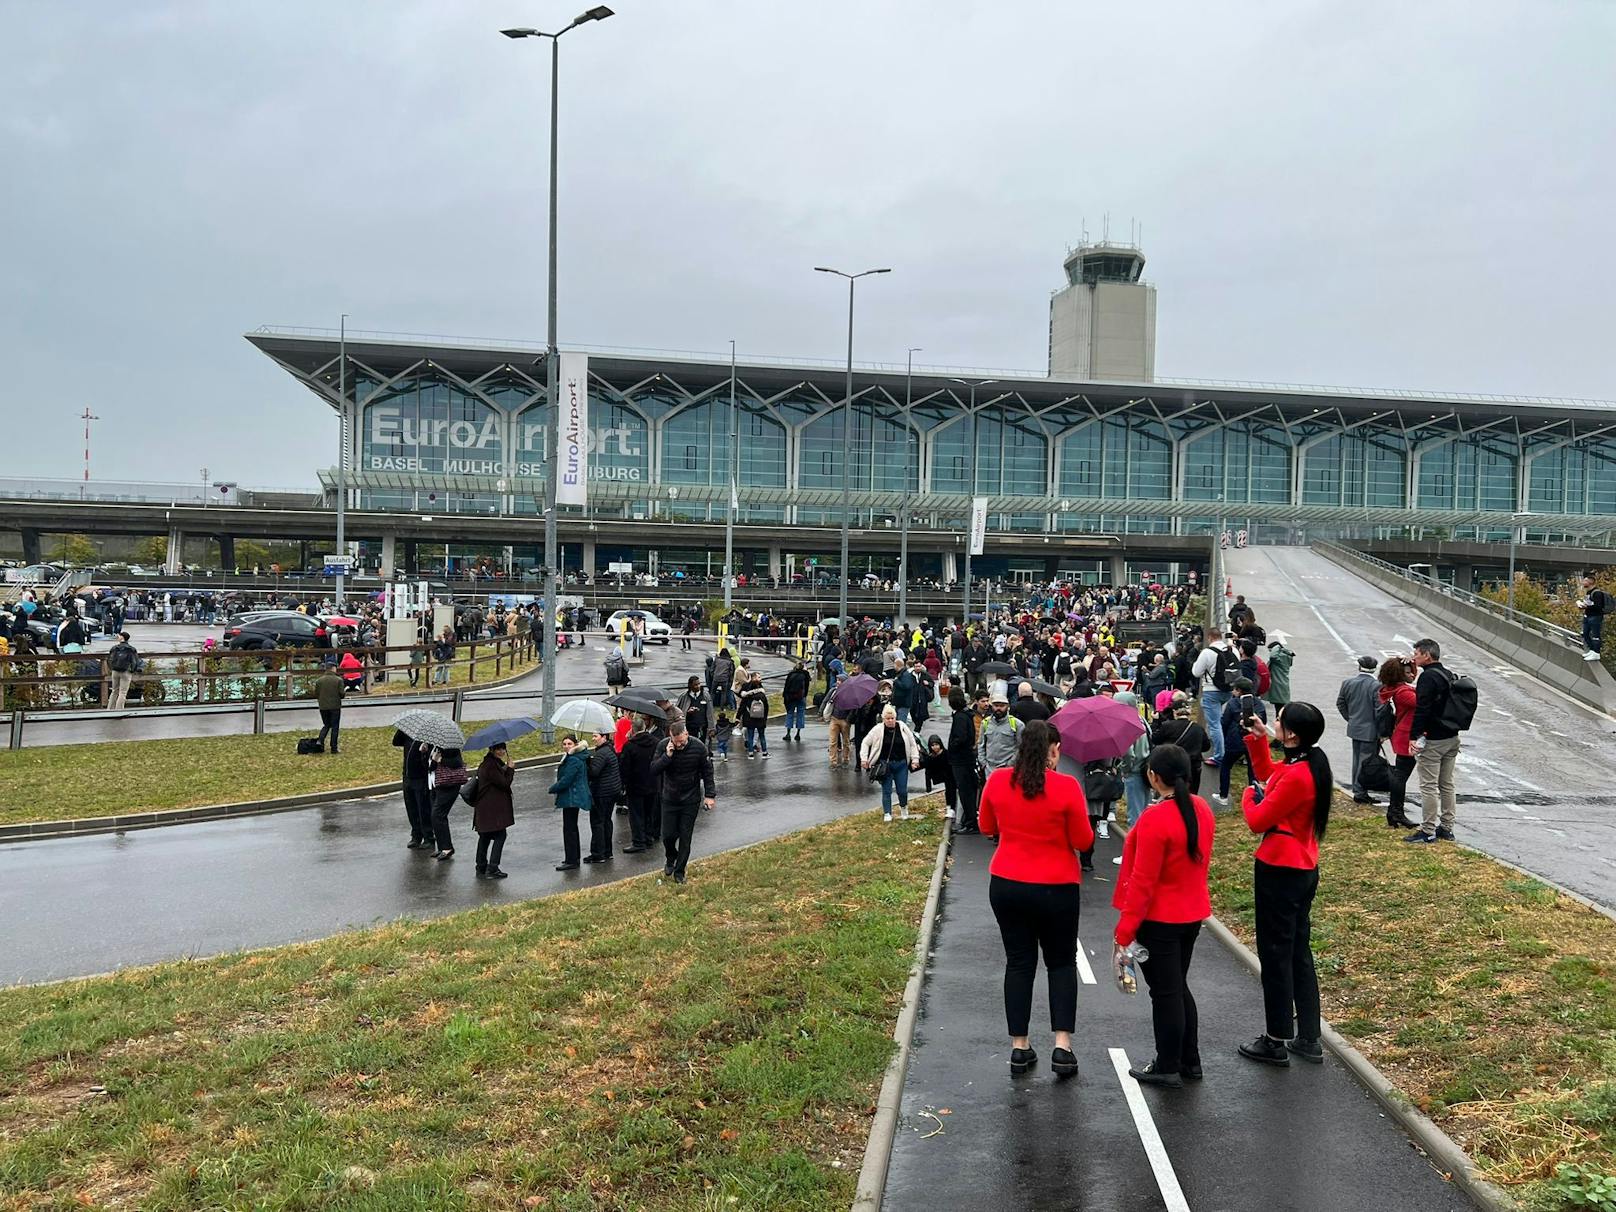 Hunderte Reisende wurden nach einem Bombenalarm am Basler Euro-Airport nach draußen geschickt.